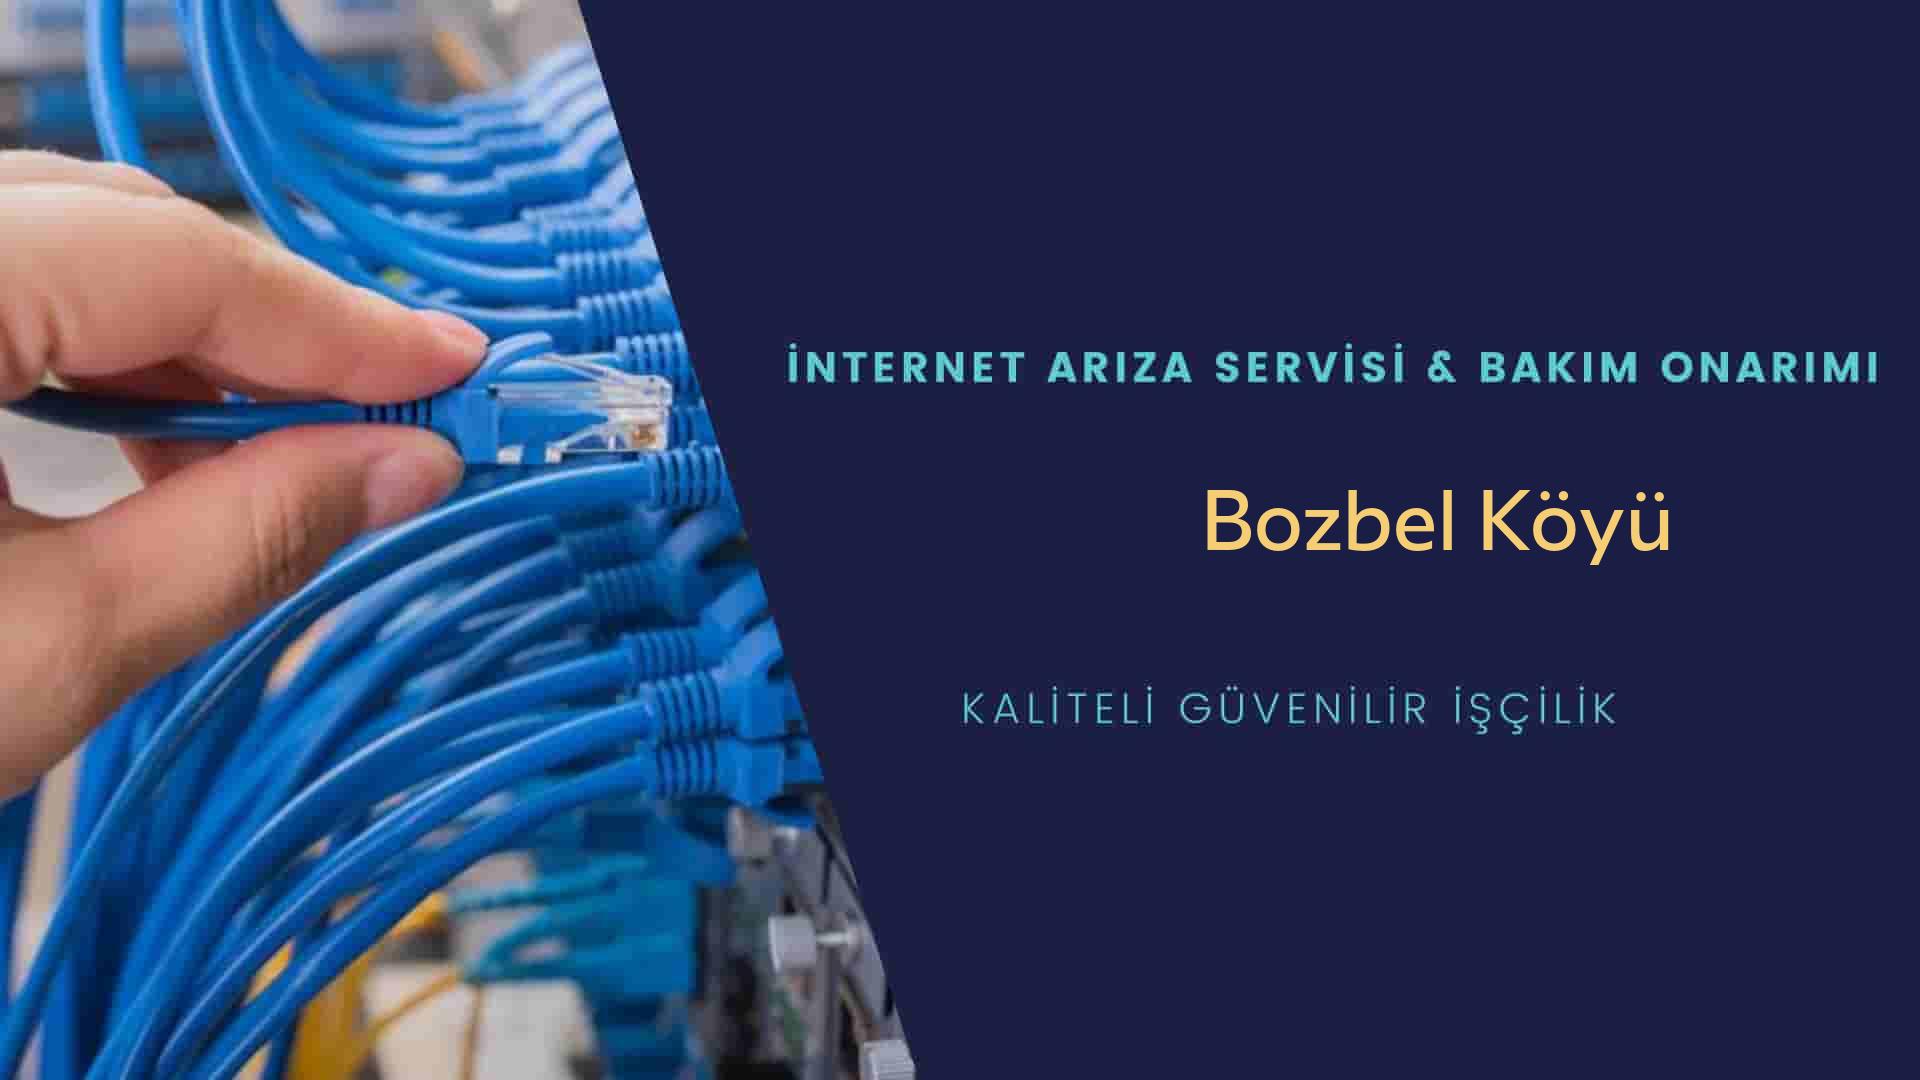 Bozbel Köyü internet kablosu çekimi yapan yerler veya elektrikçiler mi? arıyorsunuz doğru yerdesiniz o zaman sizlere 7/24 yardımcı olacak profesyonel ustalarımız bir telefon kadar yakındır size.